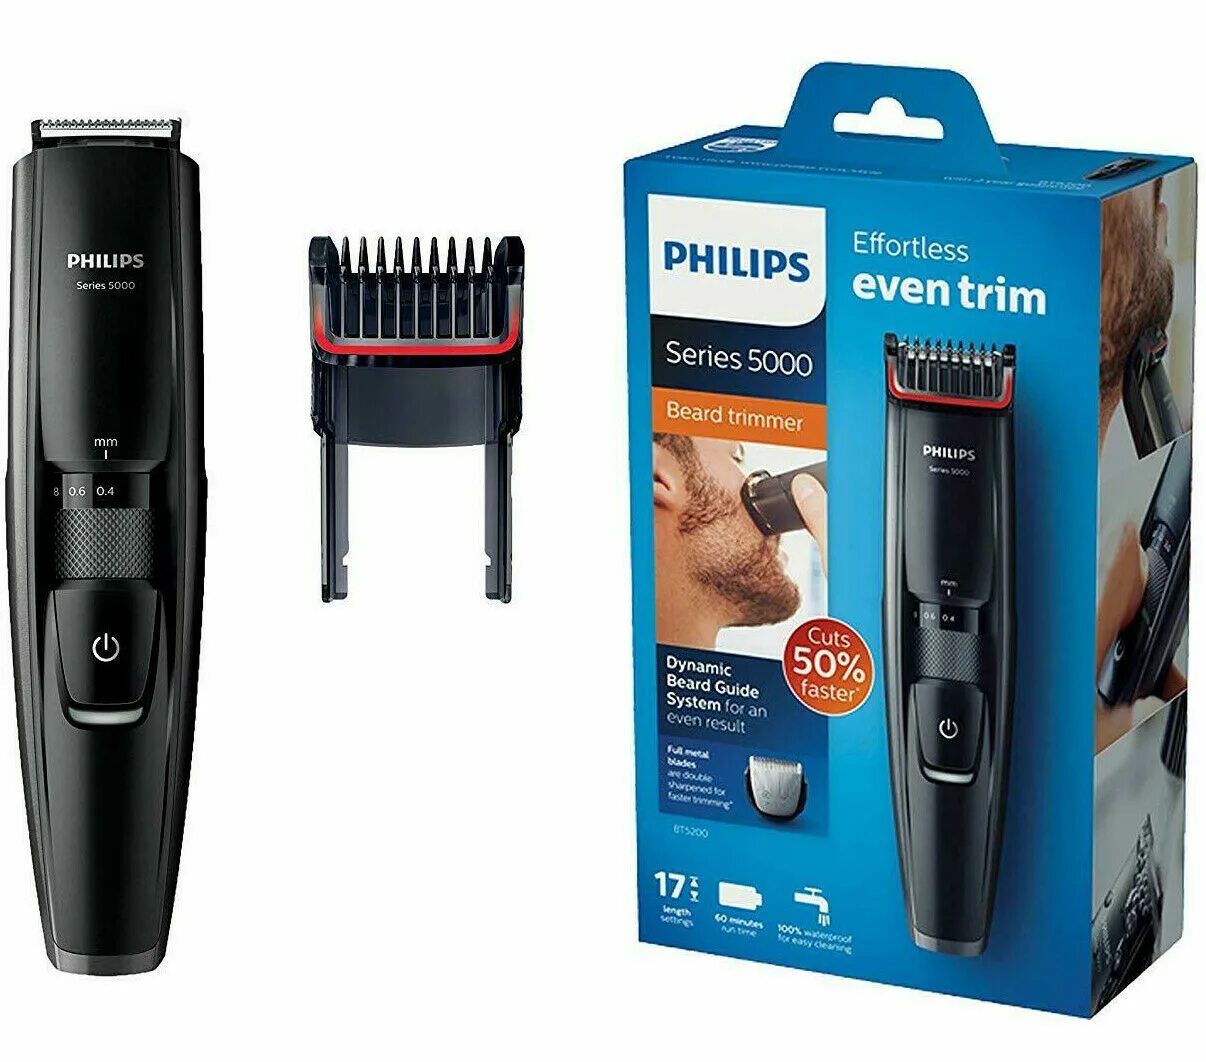 Филипс series 5000. Philips bt5200. Триммер Philips bt5200. Philips Beard Trimmer 5000. Philips Series 5000 bt5200/16.